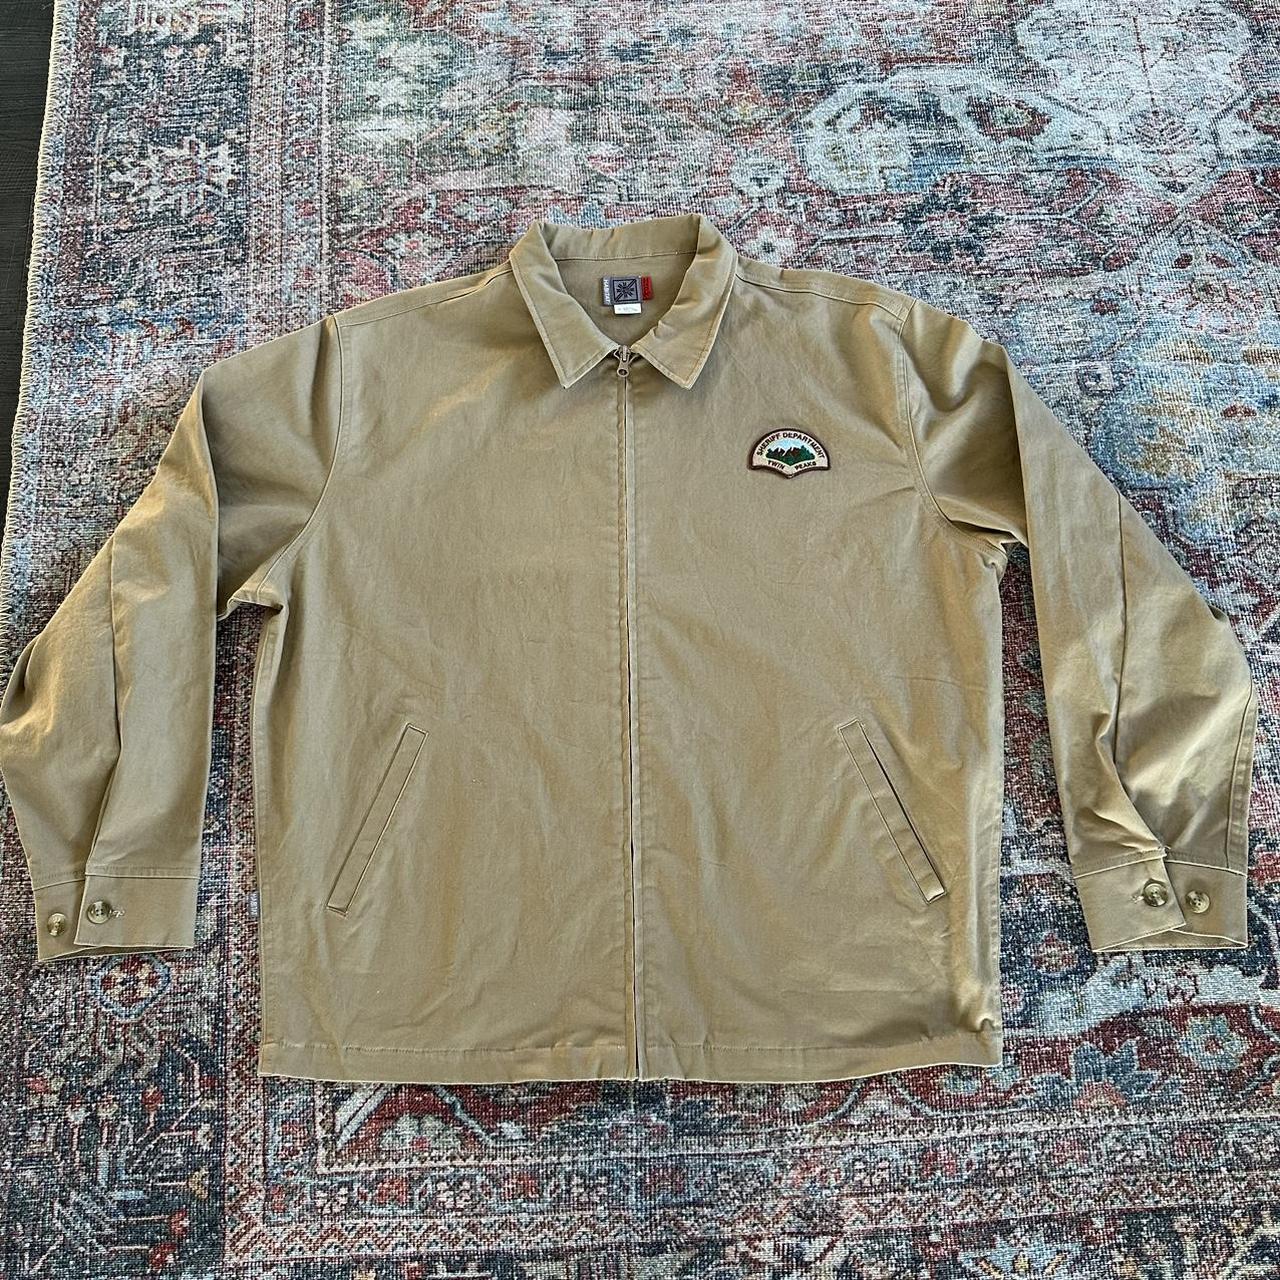 Habitat twin peaks ranger jacket - Depop